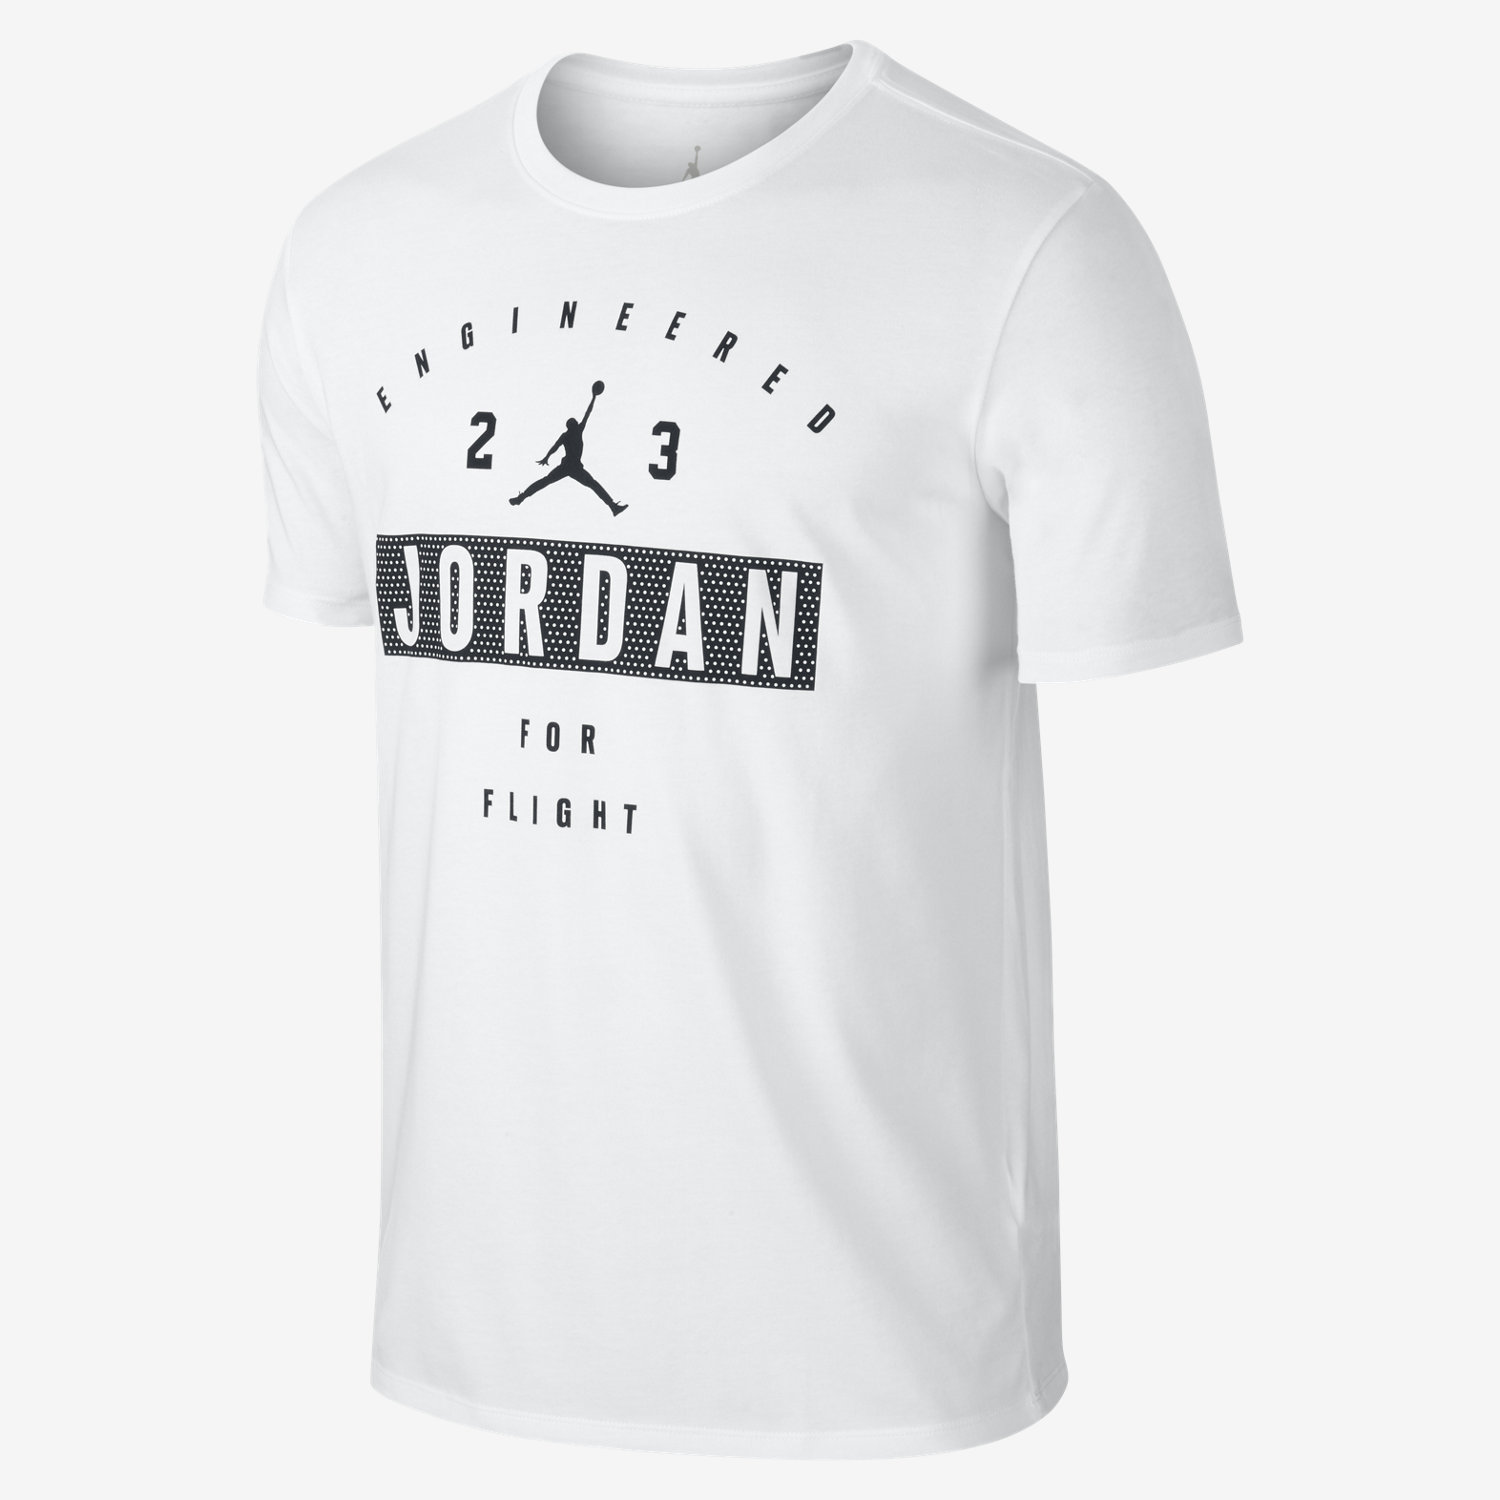 Jordan "Engineered for Flight" - Men's T-Shirt